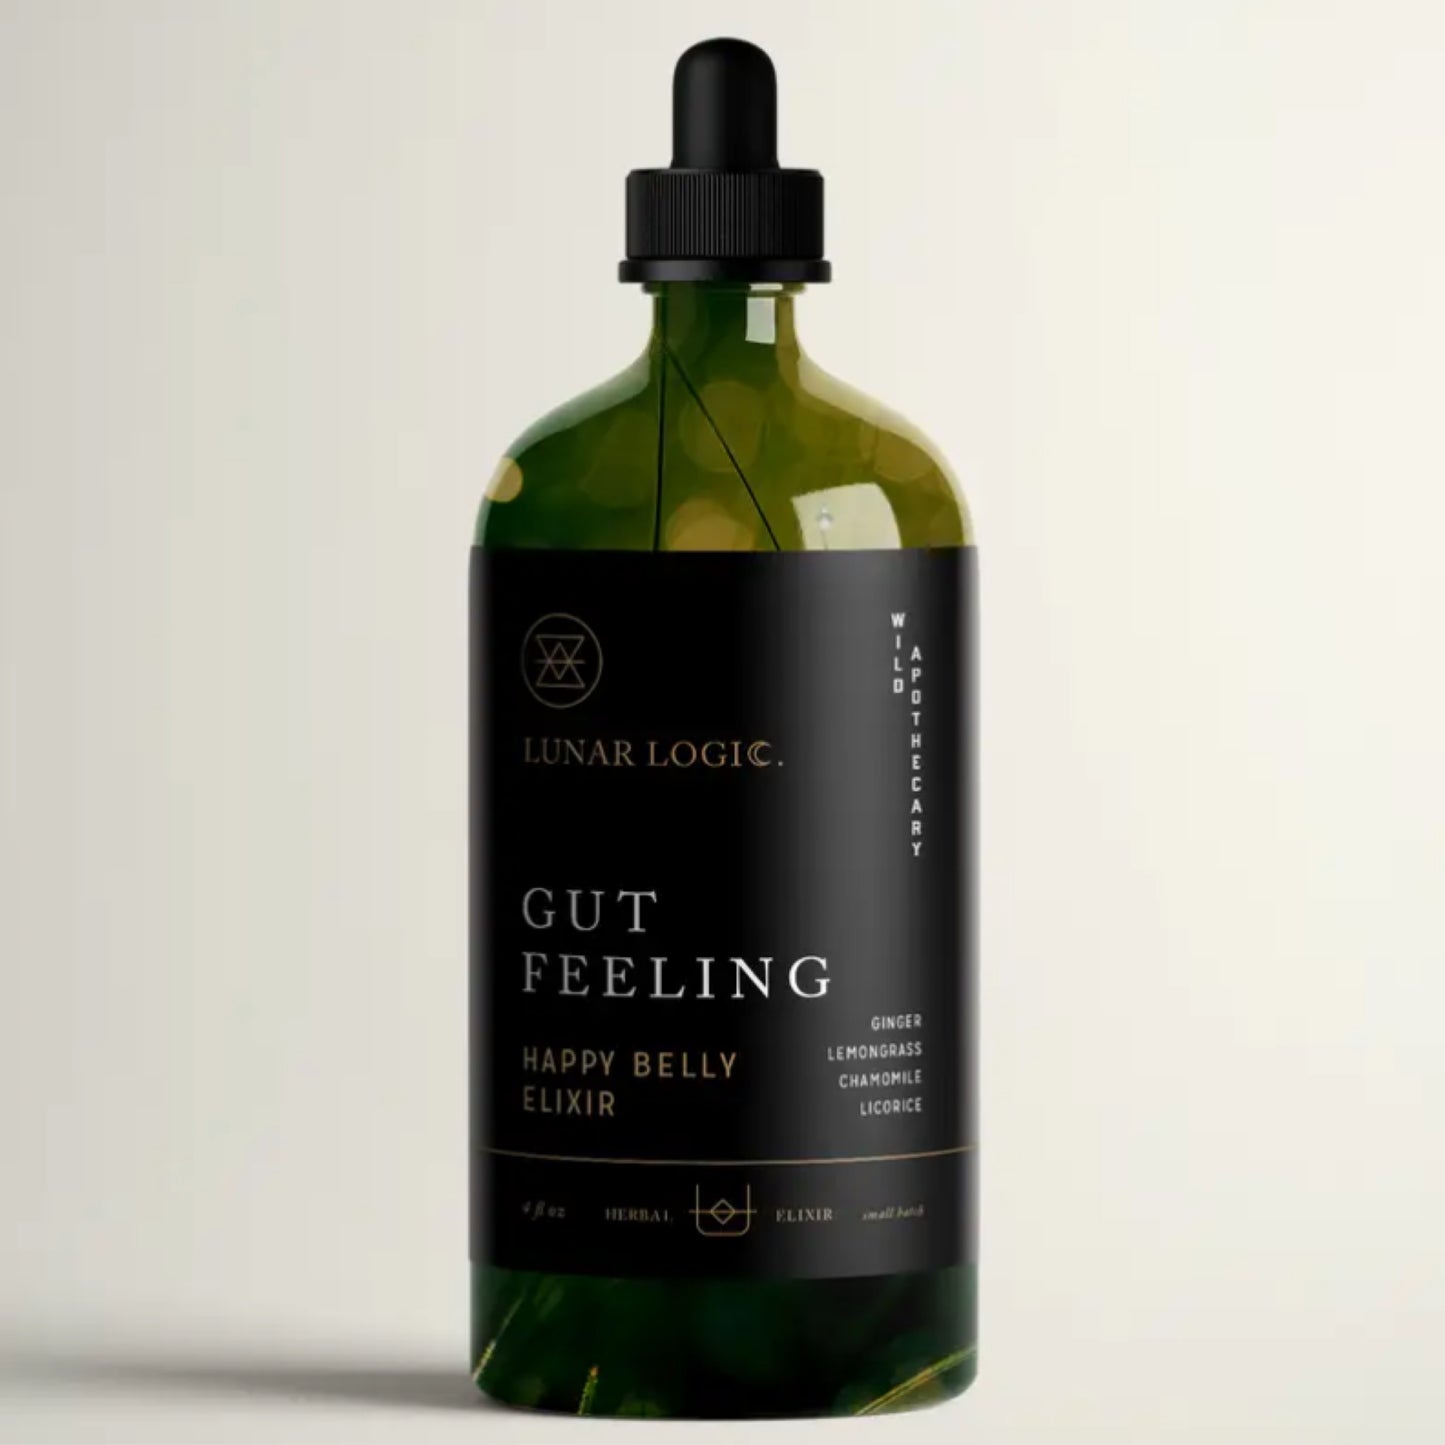 Gut feeling - Happy belly elixir